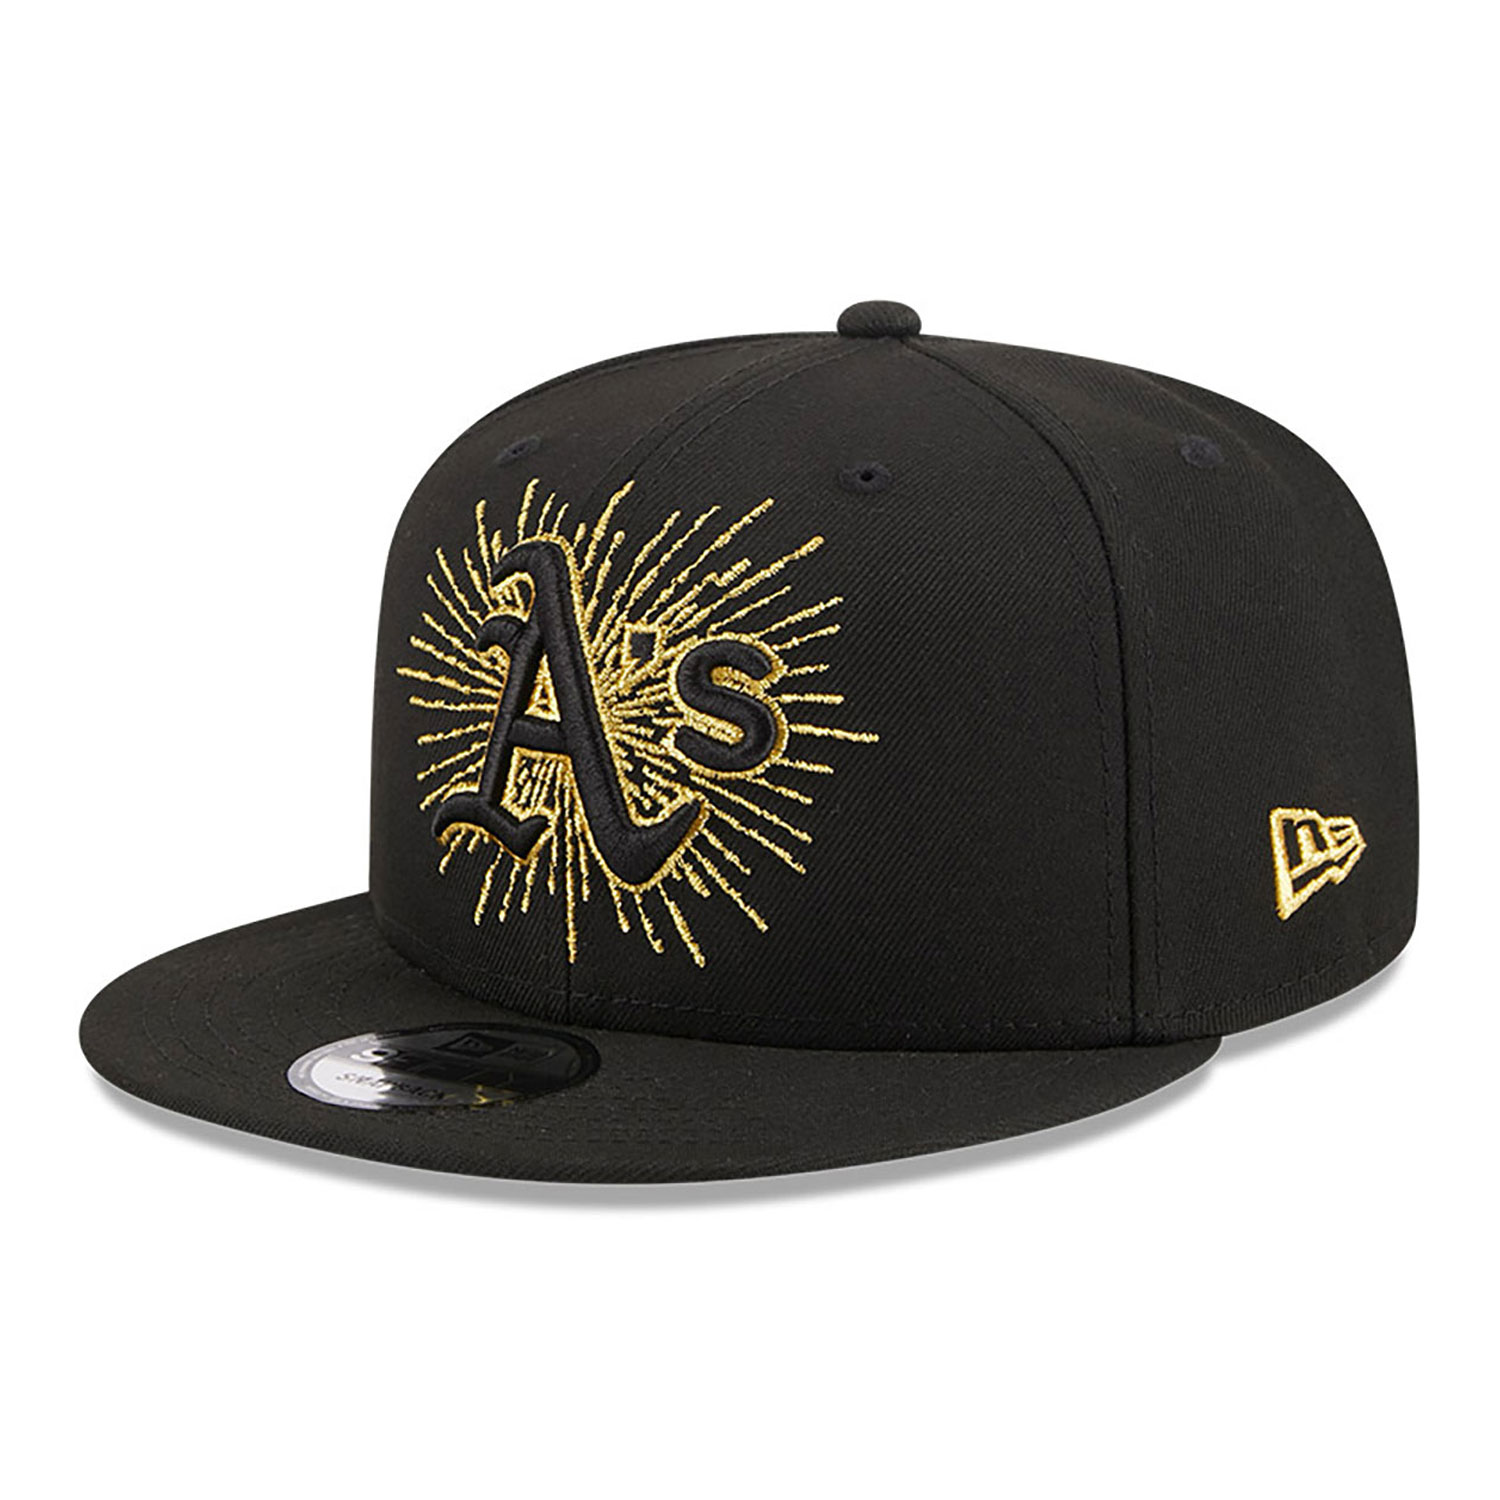 Oakland Athletics Metallic Logo Black 9FIFTY Snapback Cap